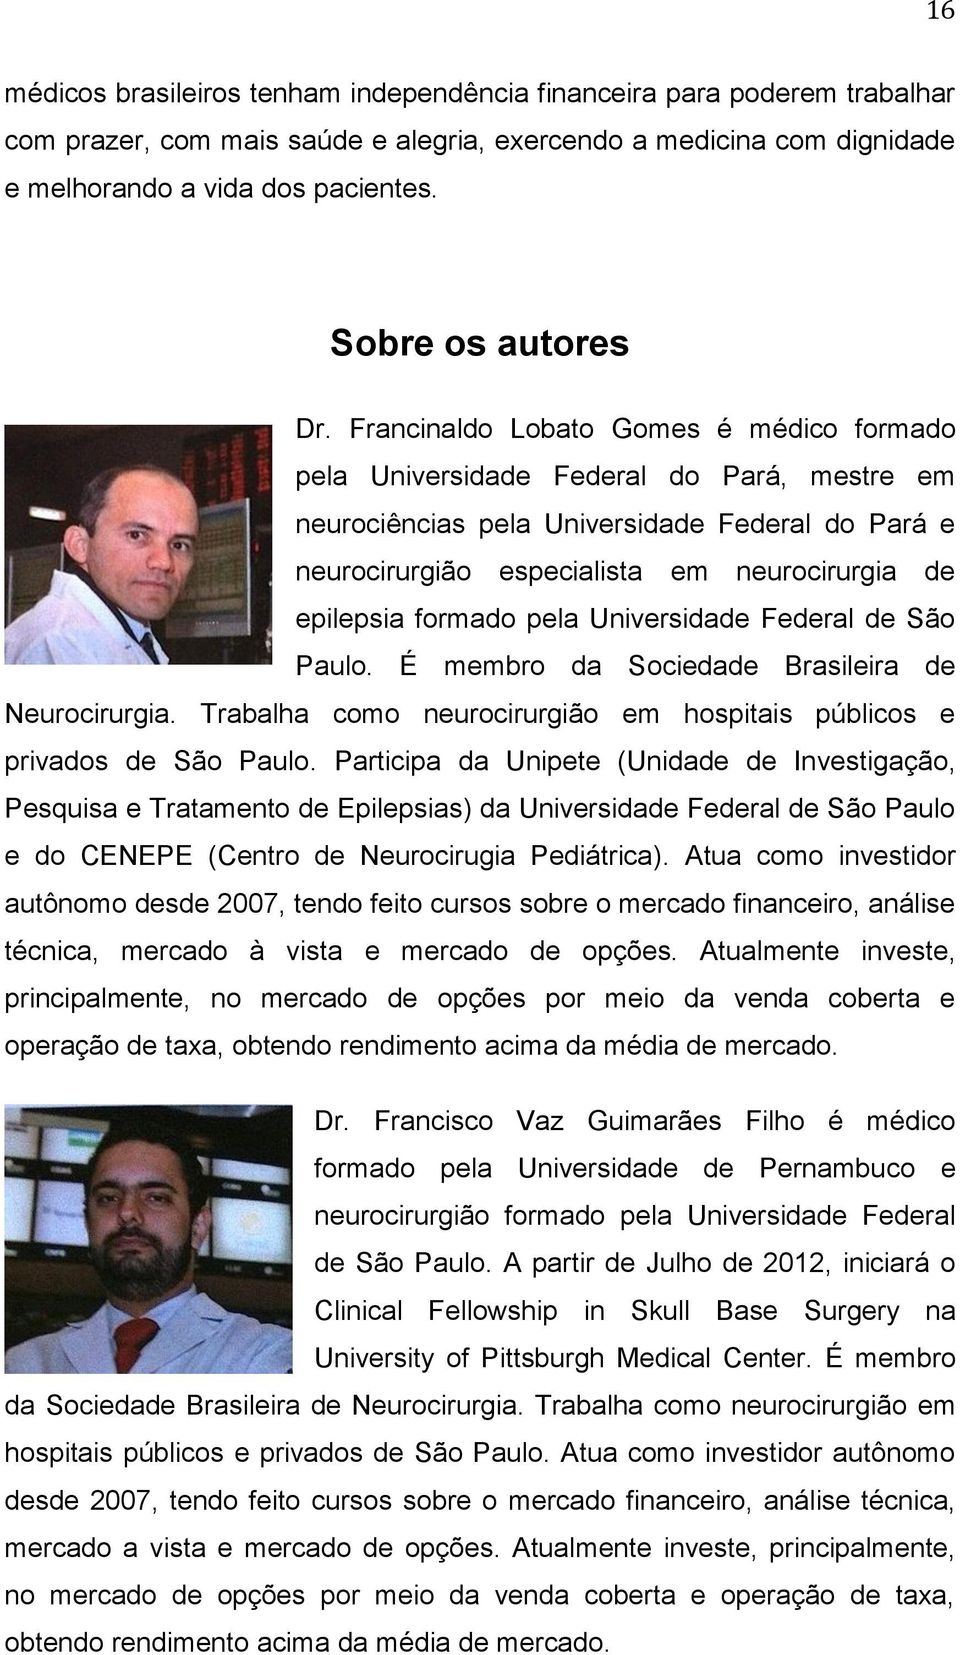 Francinaldo Lobato Gomes é médico formado pela Universidade Federal do Pará, mestre em neurociências pela Universidade Federal do Pará e neurocirurgião especialista em neurocirurgia de epilepsia